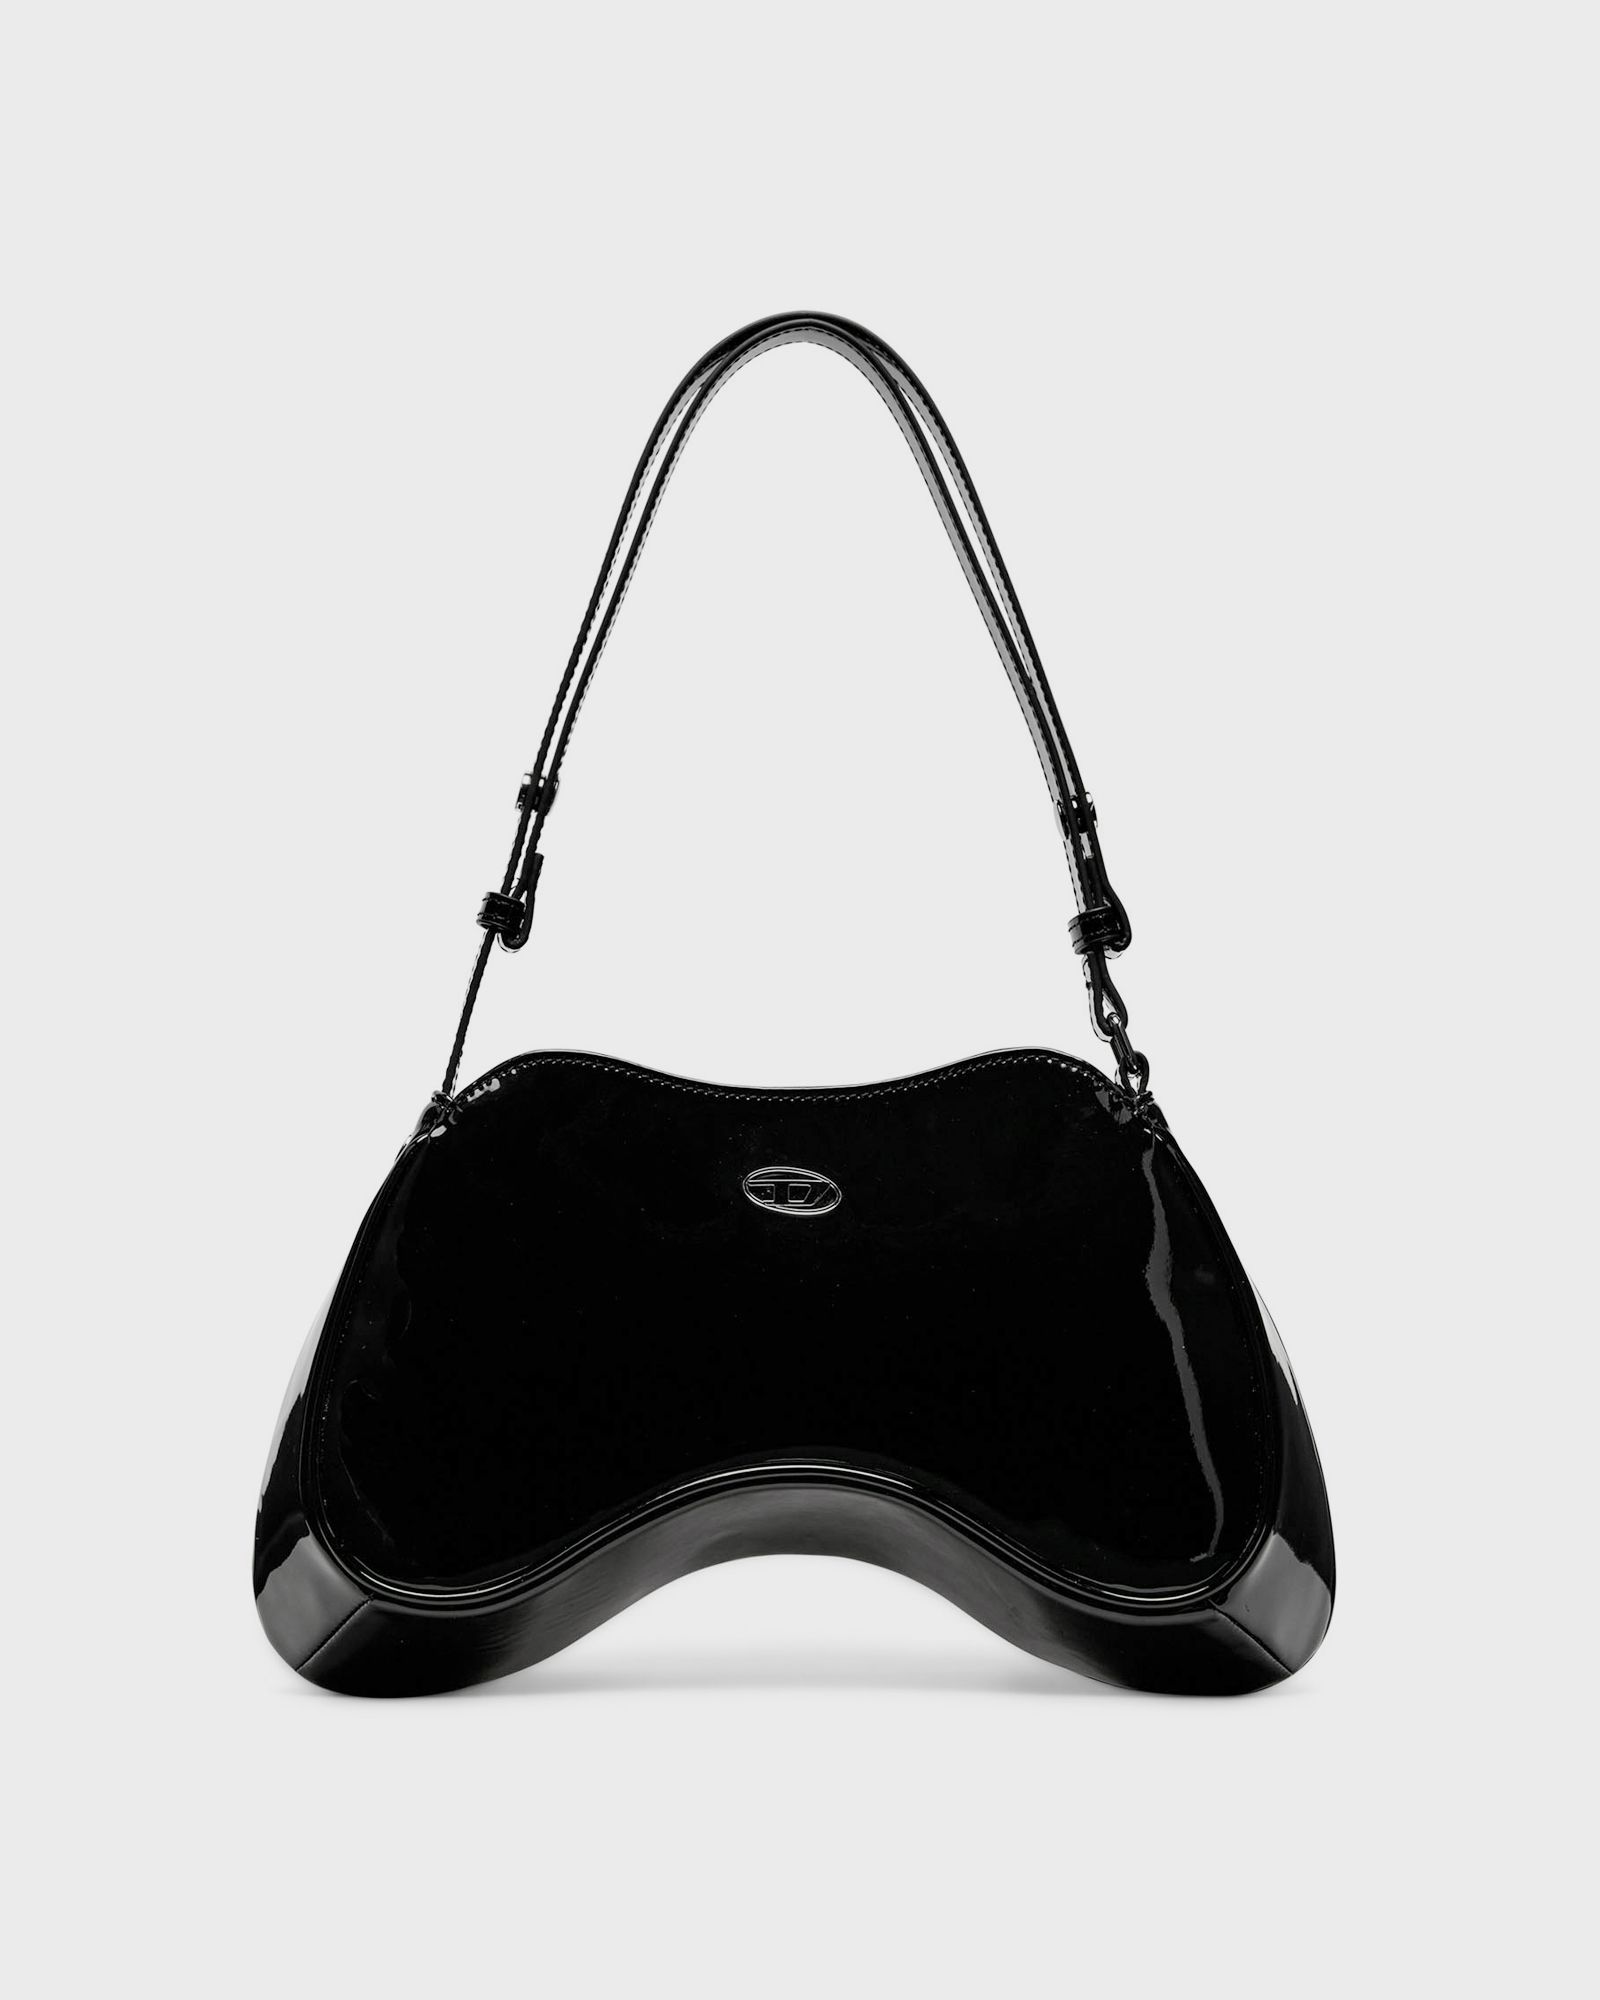 Diesel - play play shoulder cross women handbags black in größe:one size